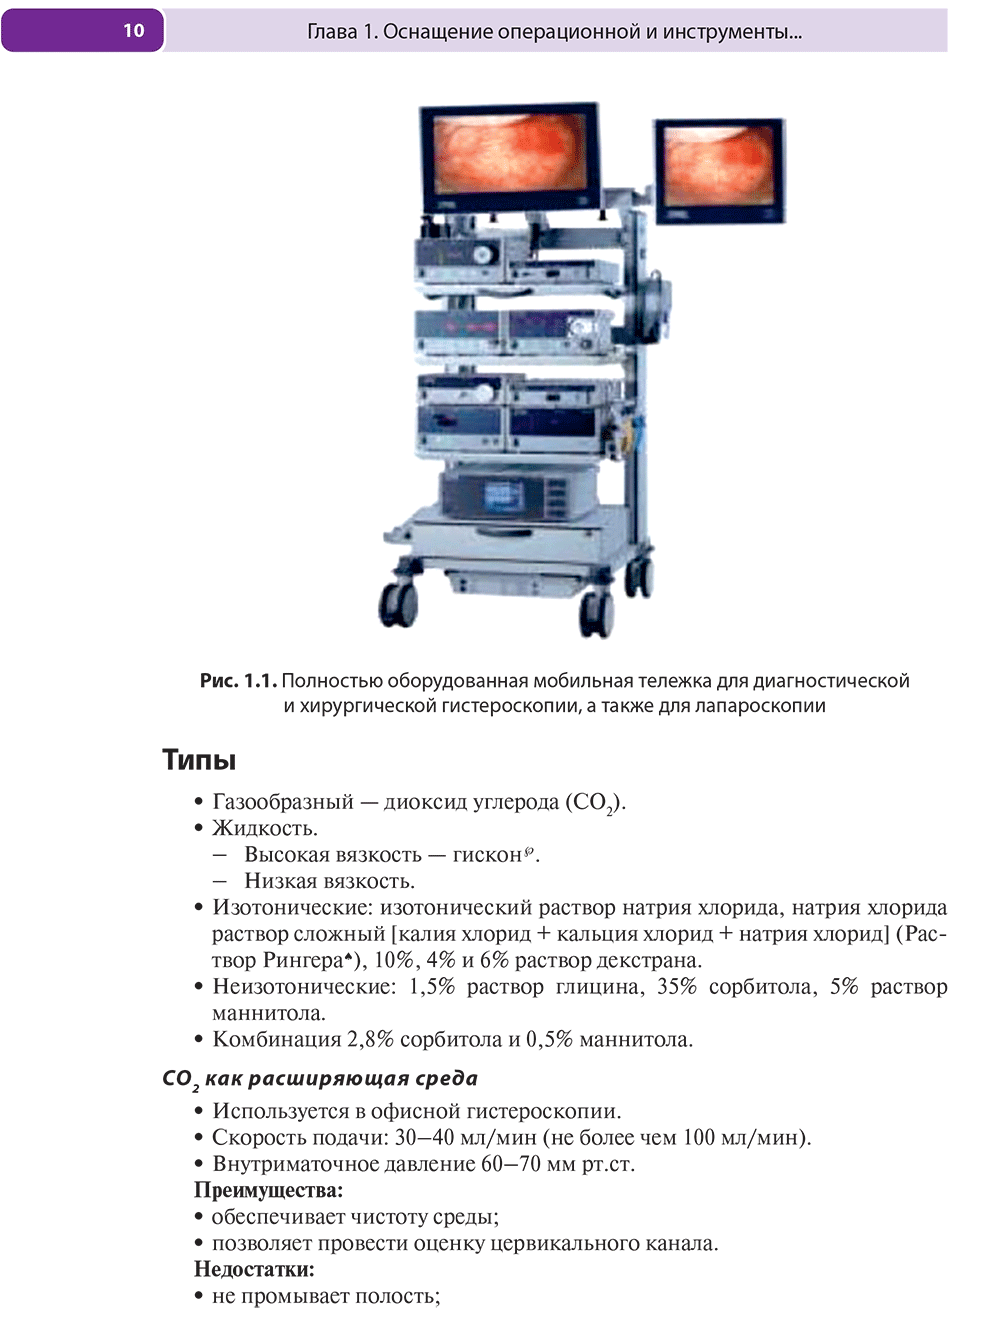 Полностью оборудованная мобильная тележка для диагностической и хирургической гистероскопии, а также для лапароскопии